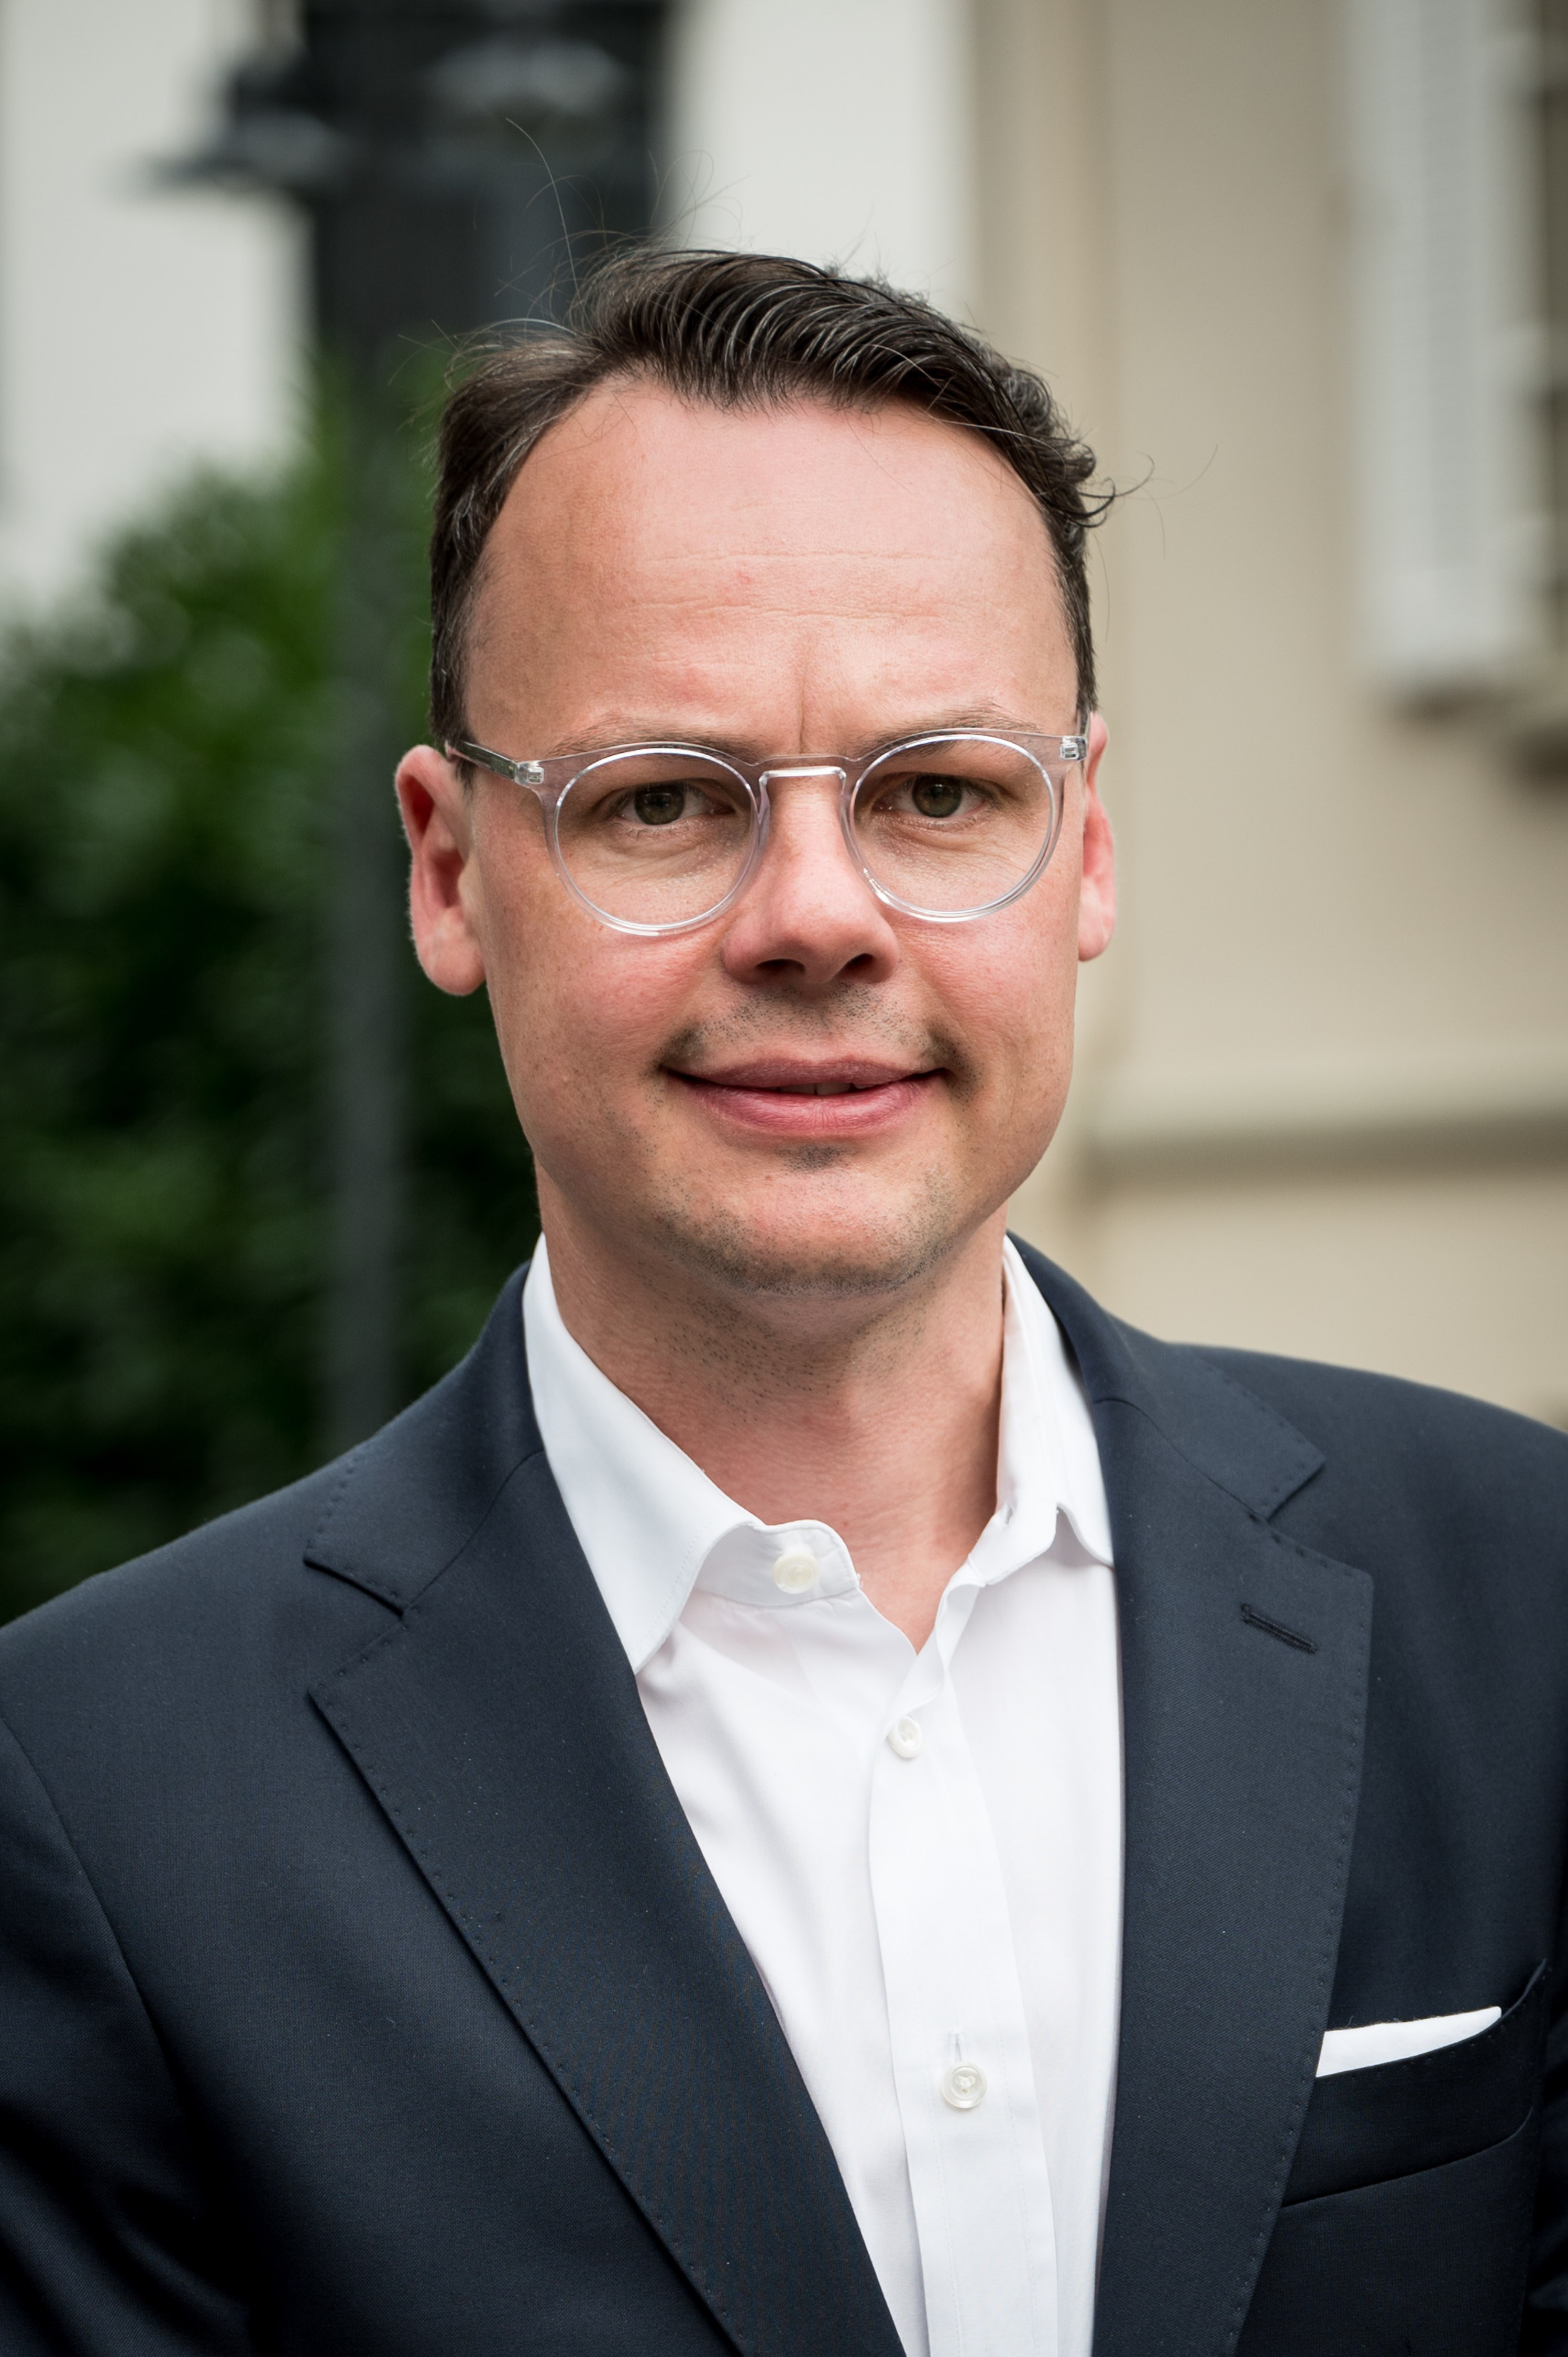 Dr. Florian Plagemann